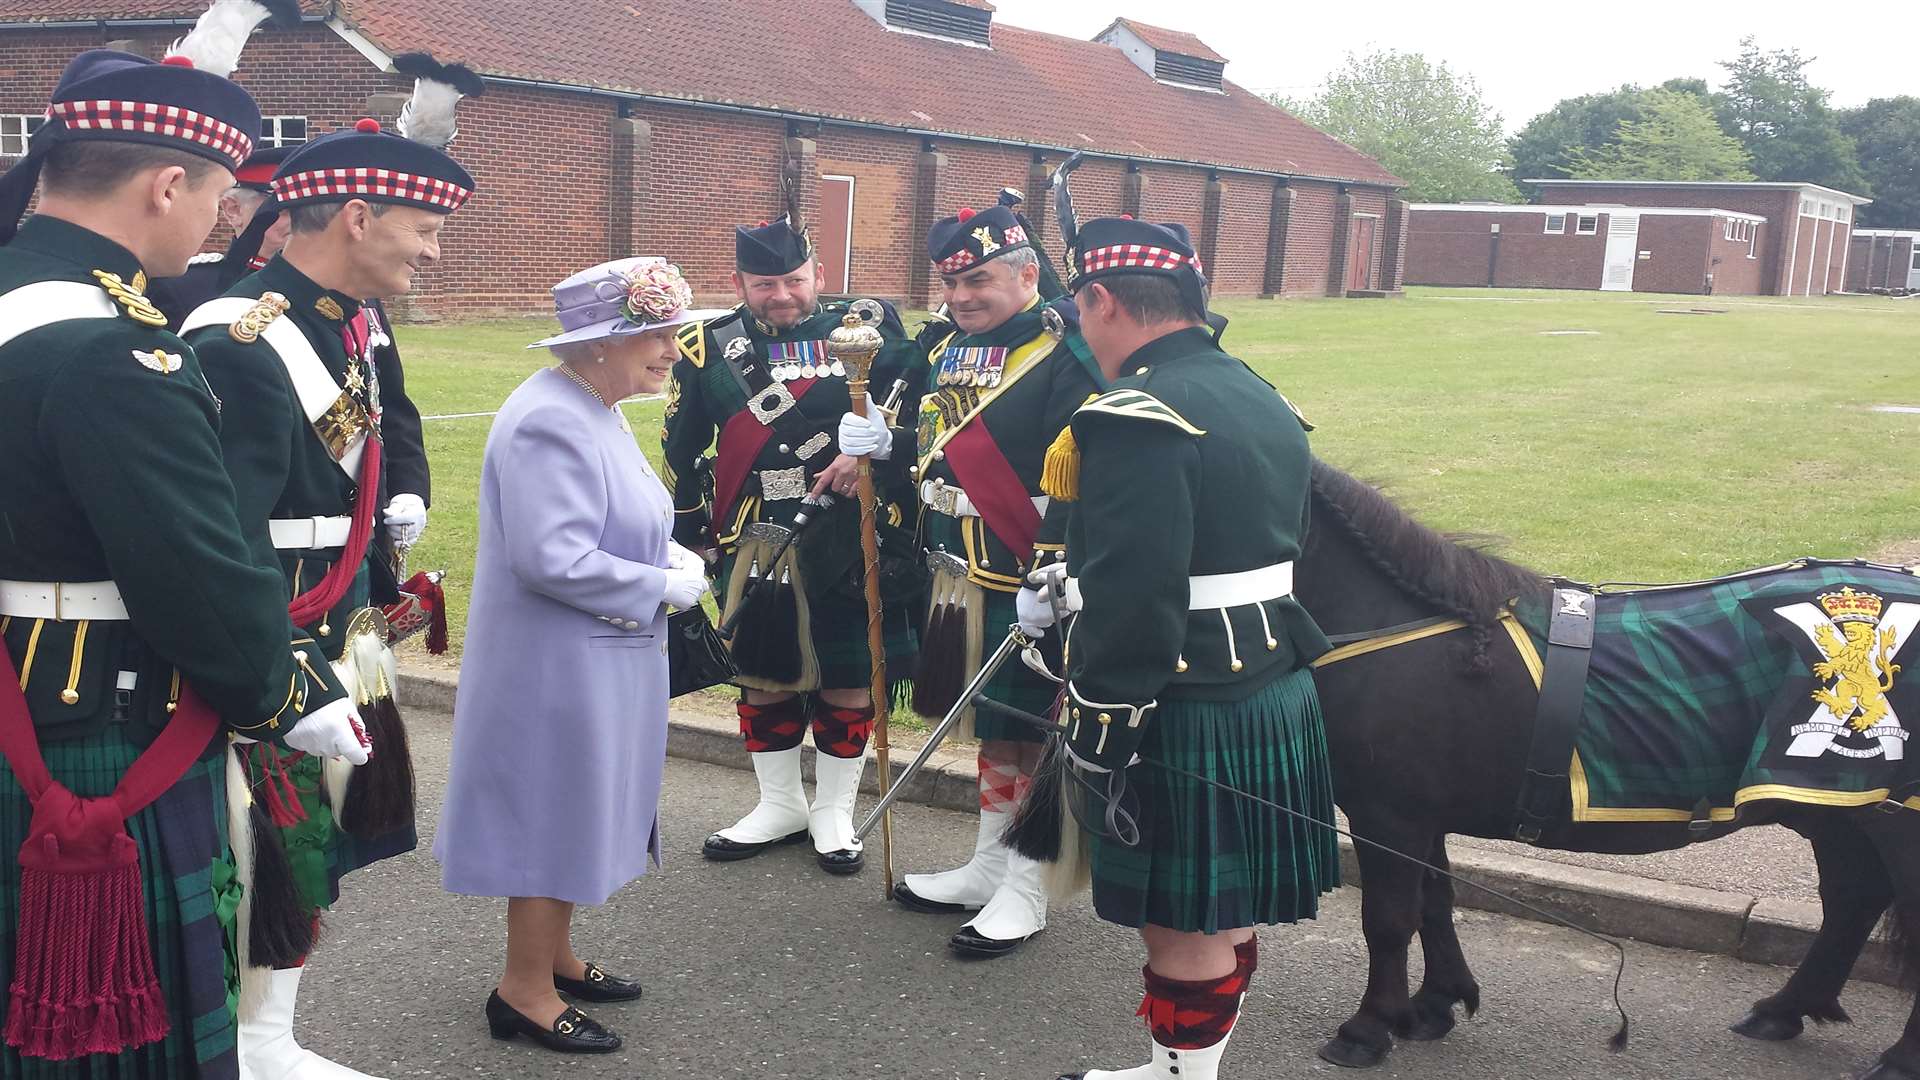 The Queen meets 5 SCOTS mascot at Howe Barracks